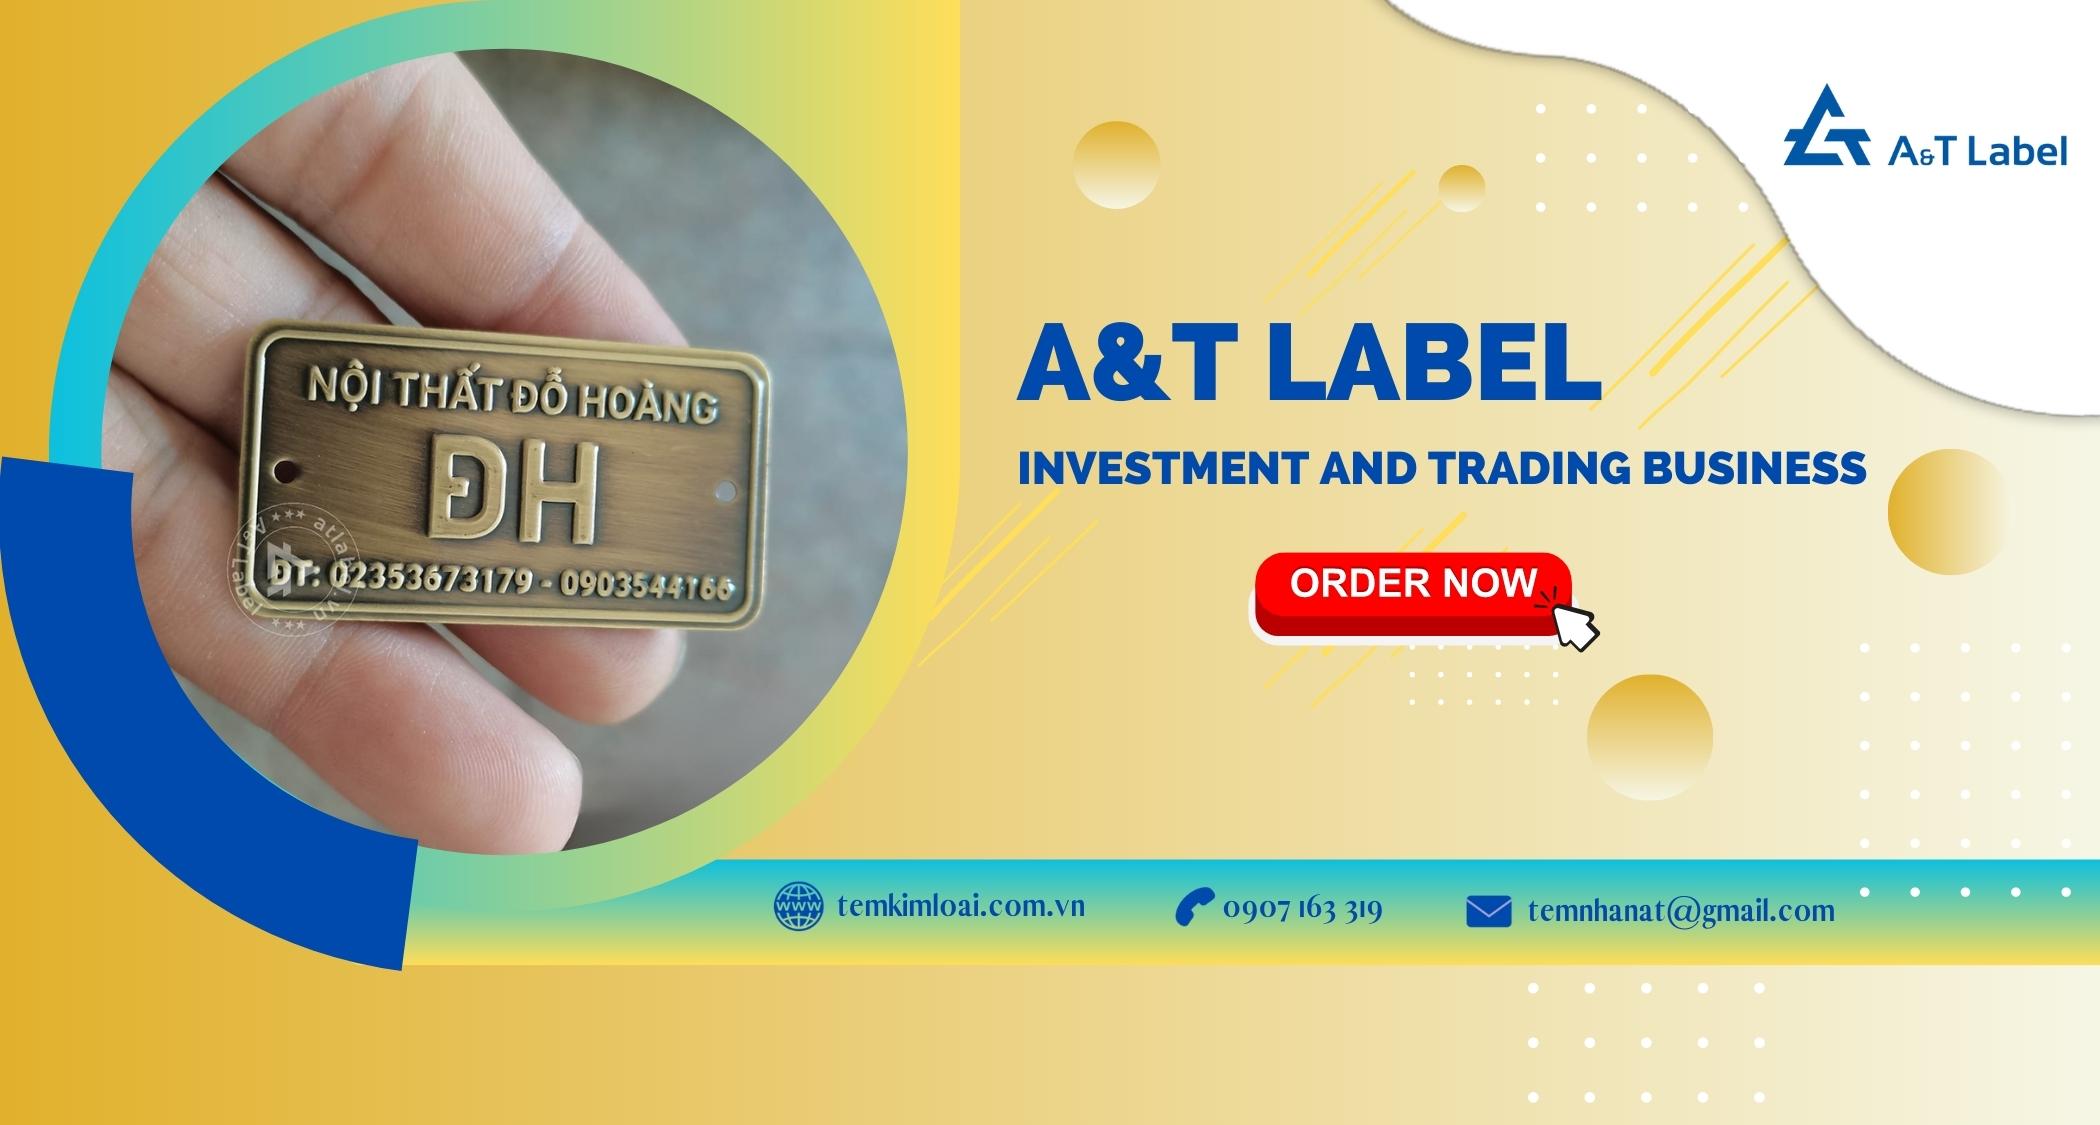 In tem đồng giá rẻ TPHCM tại A&T Label